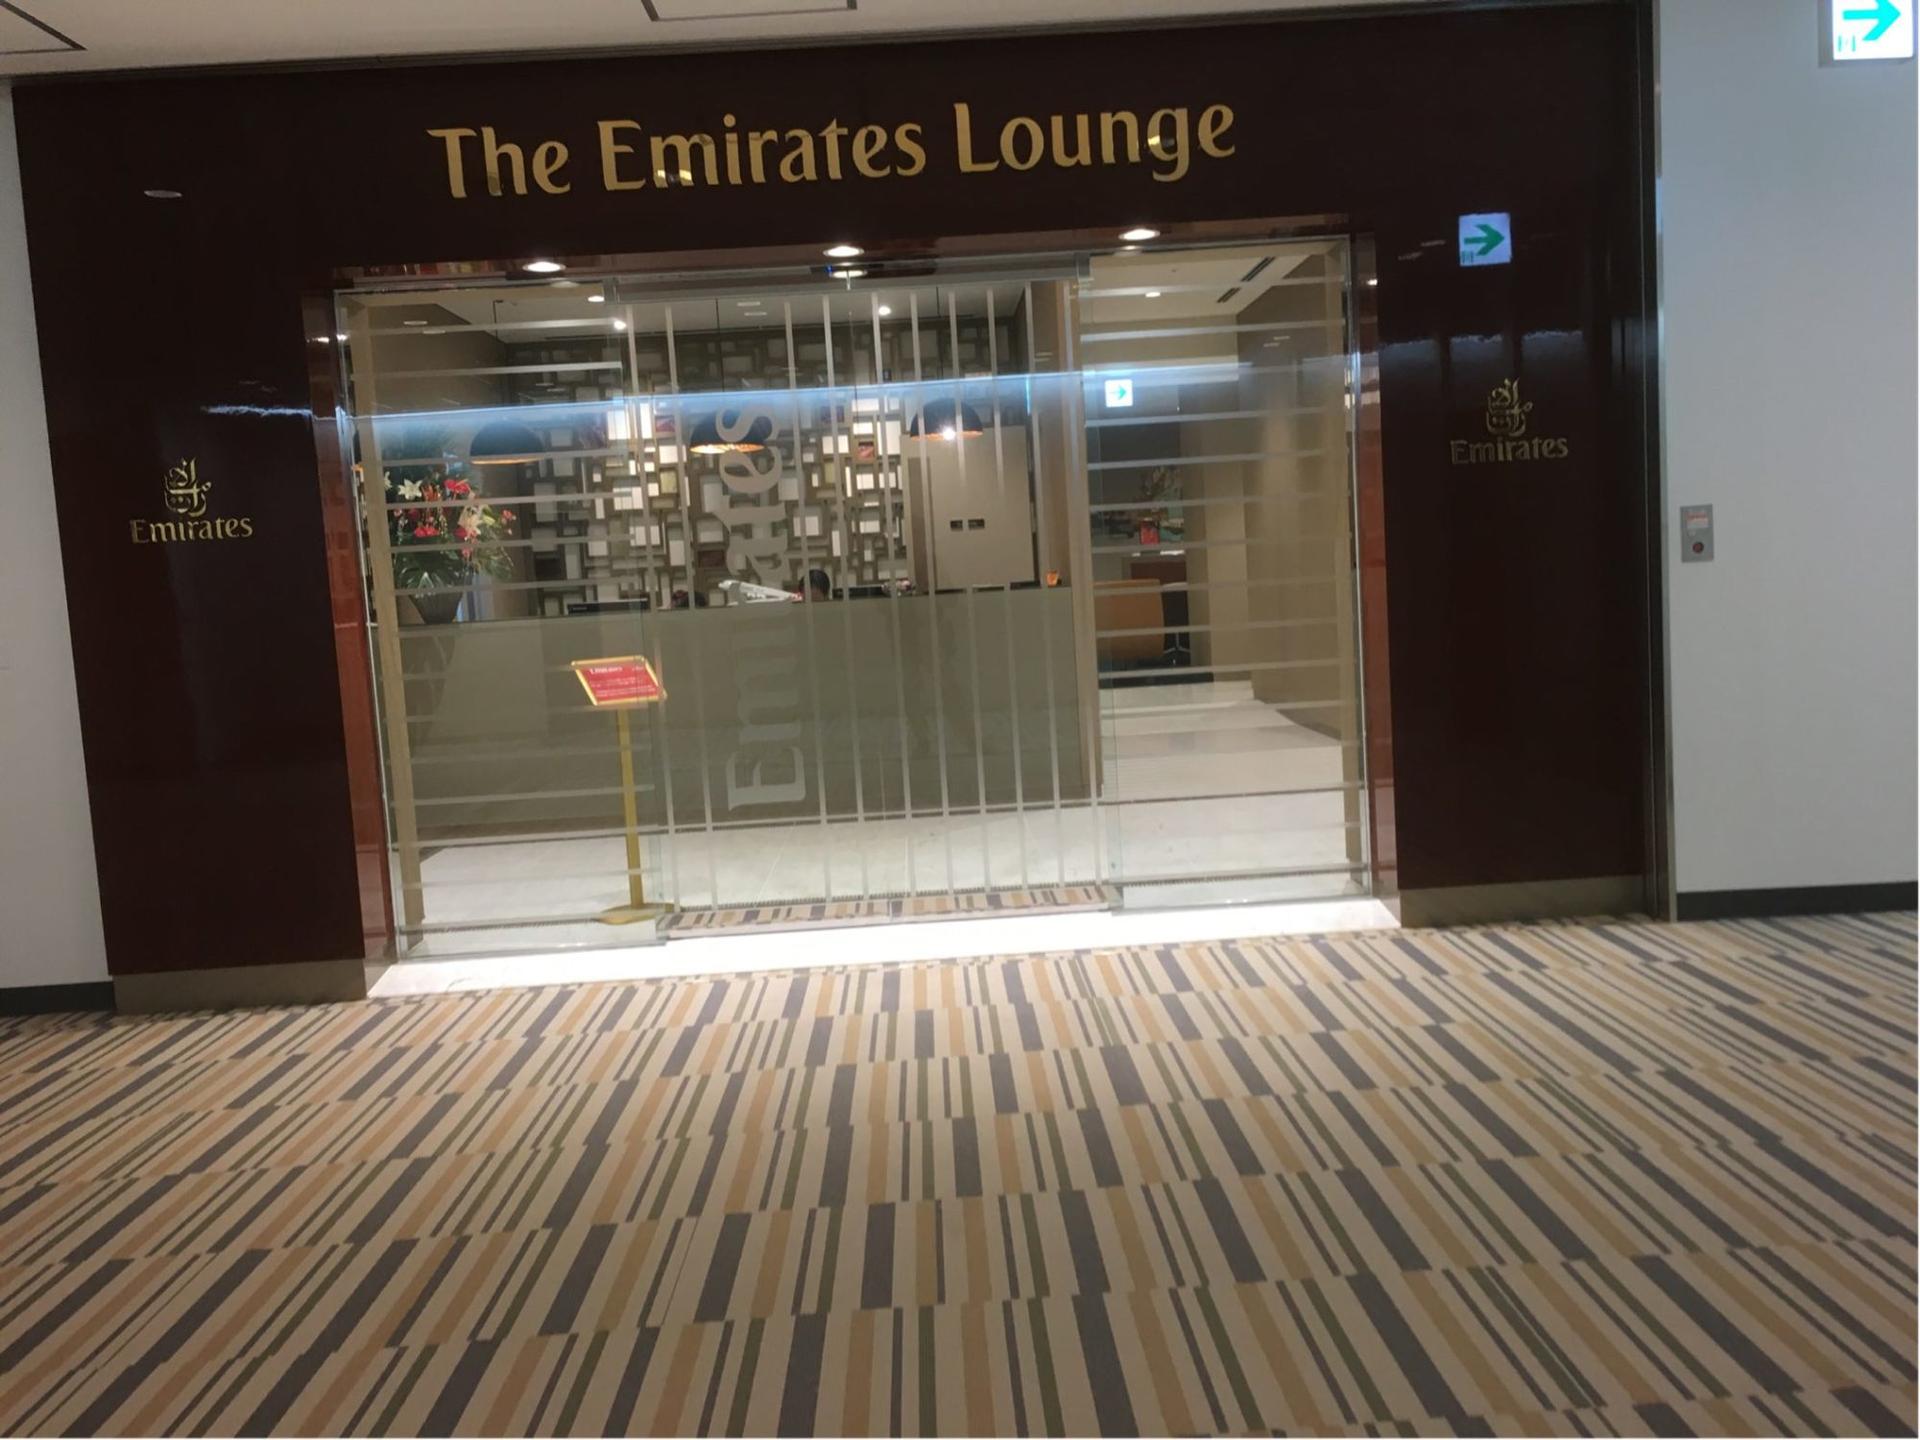 The Emirates Lounge  image 4 of 9